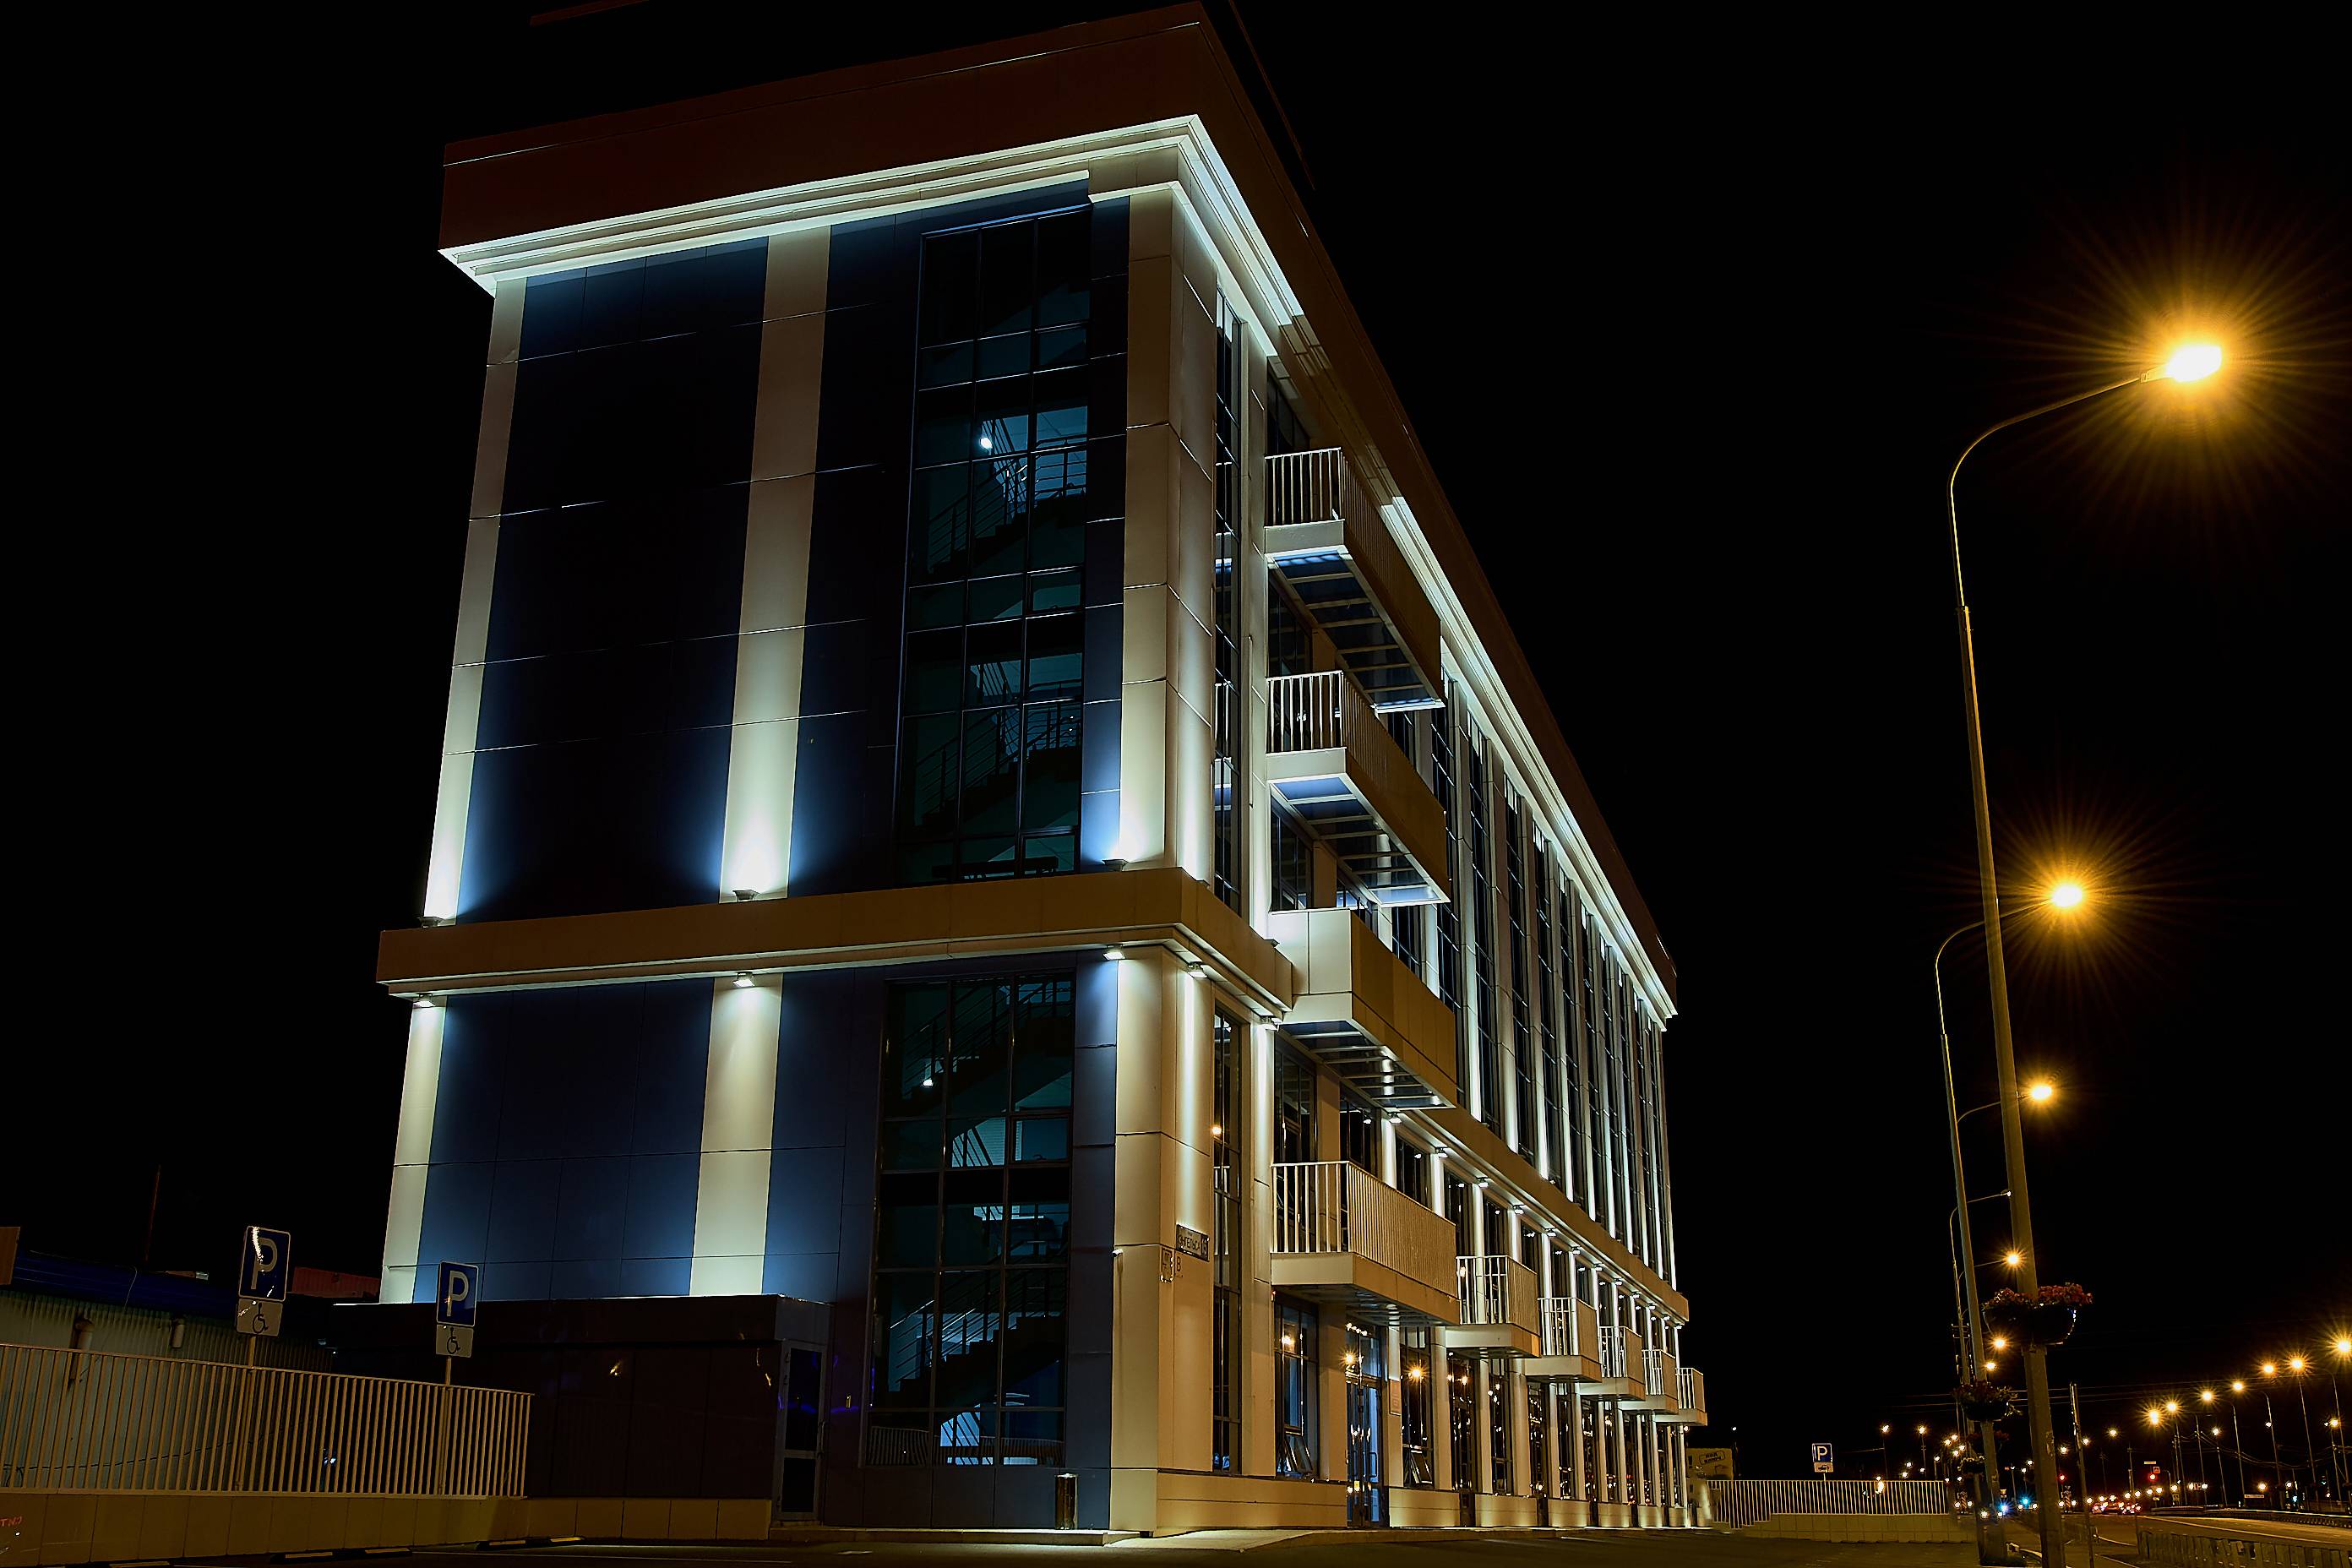 Архитектурная подсветка фасадов зданий. как это делается